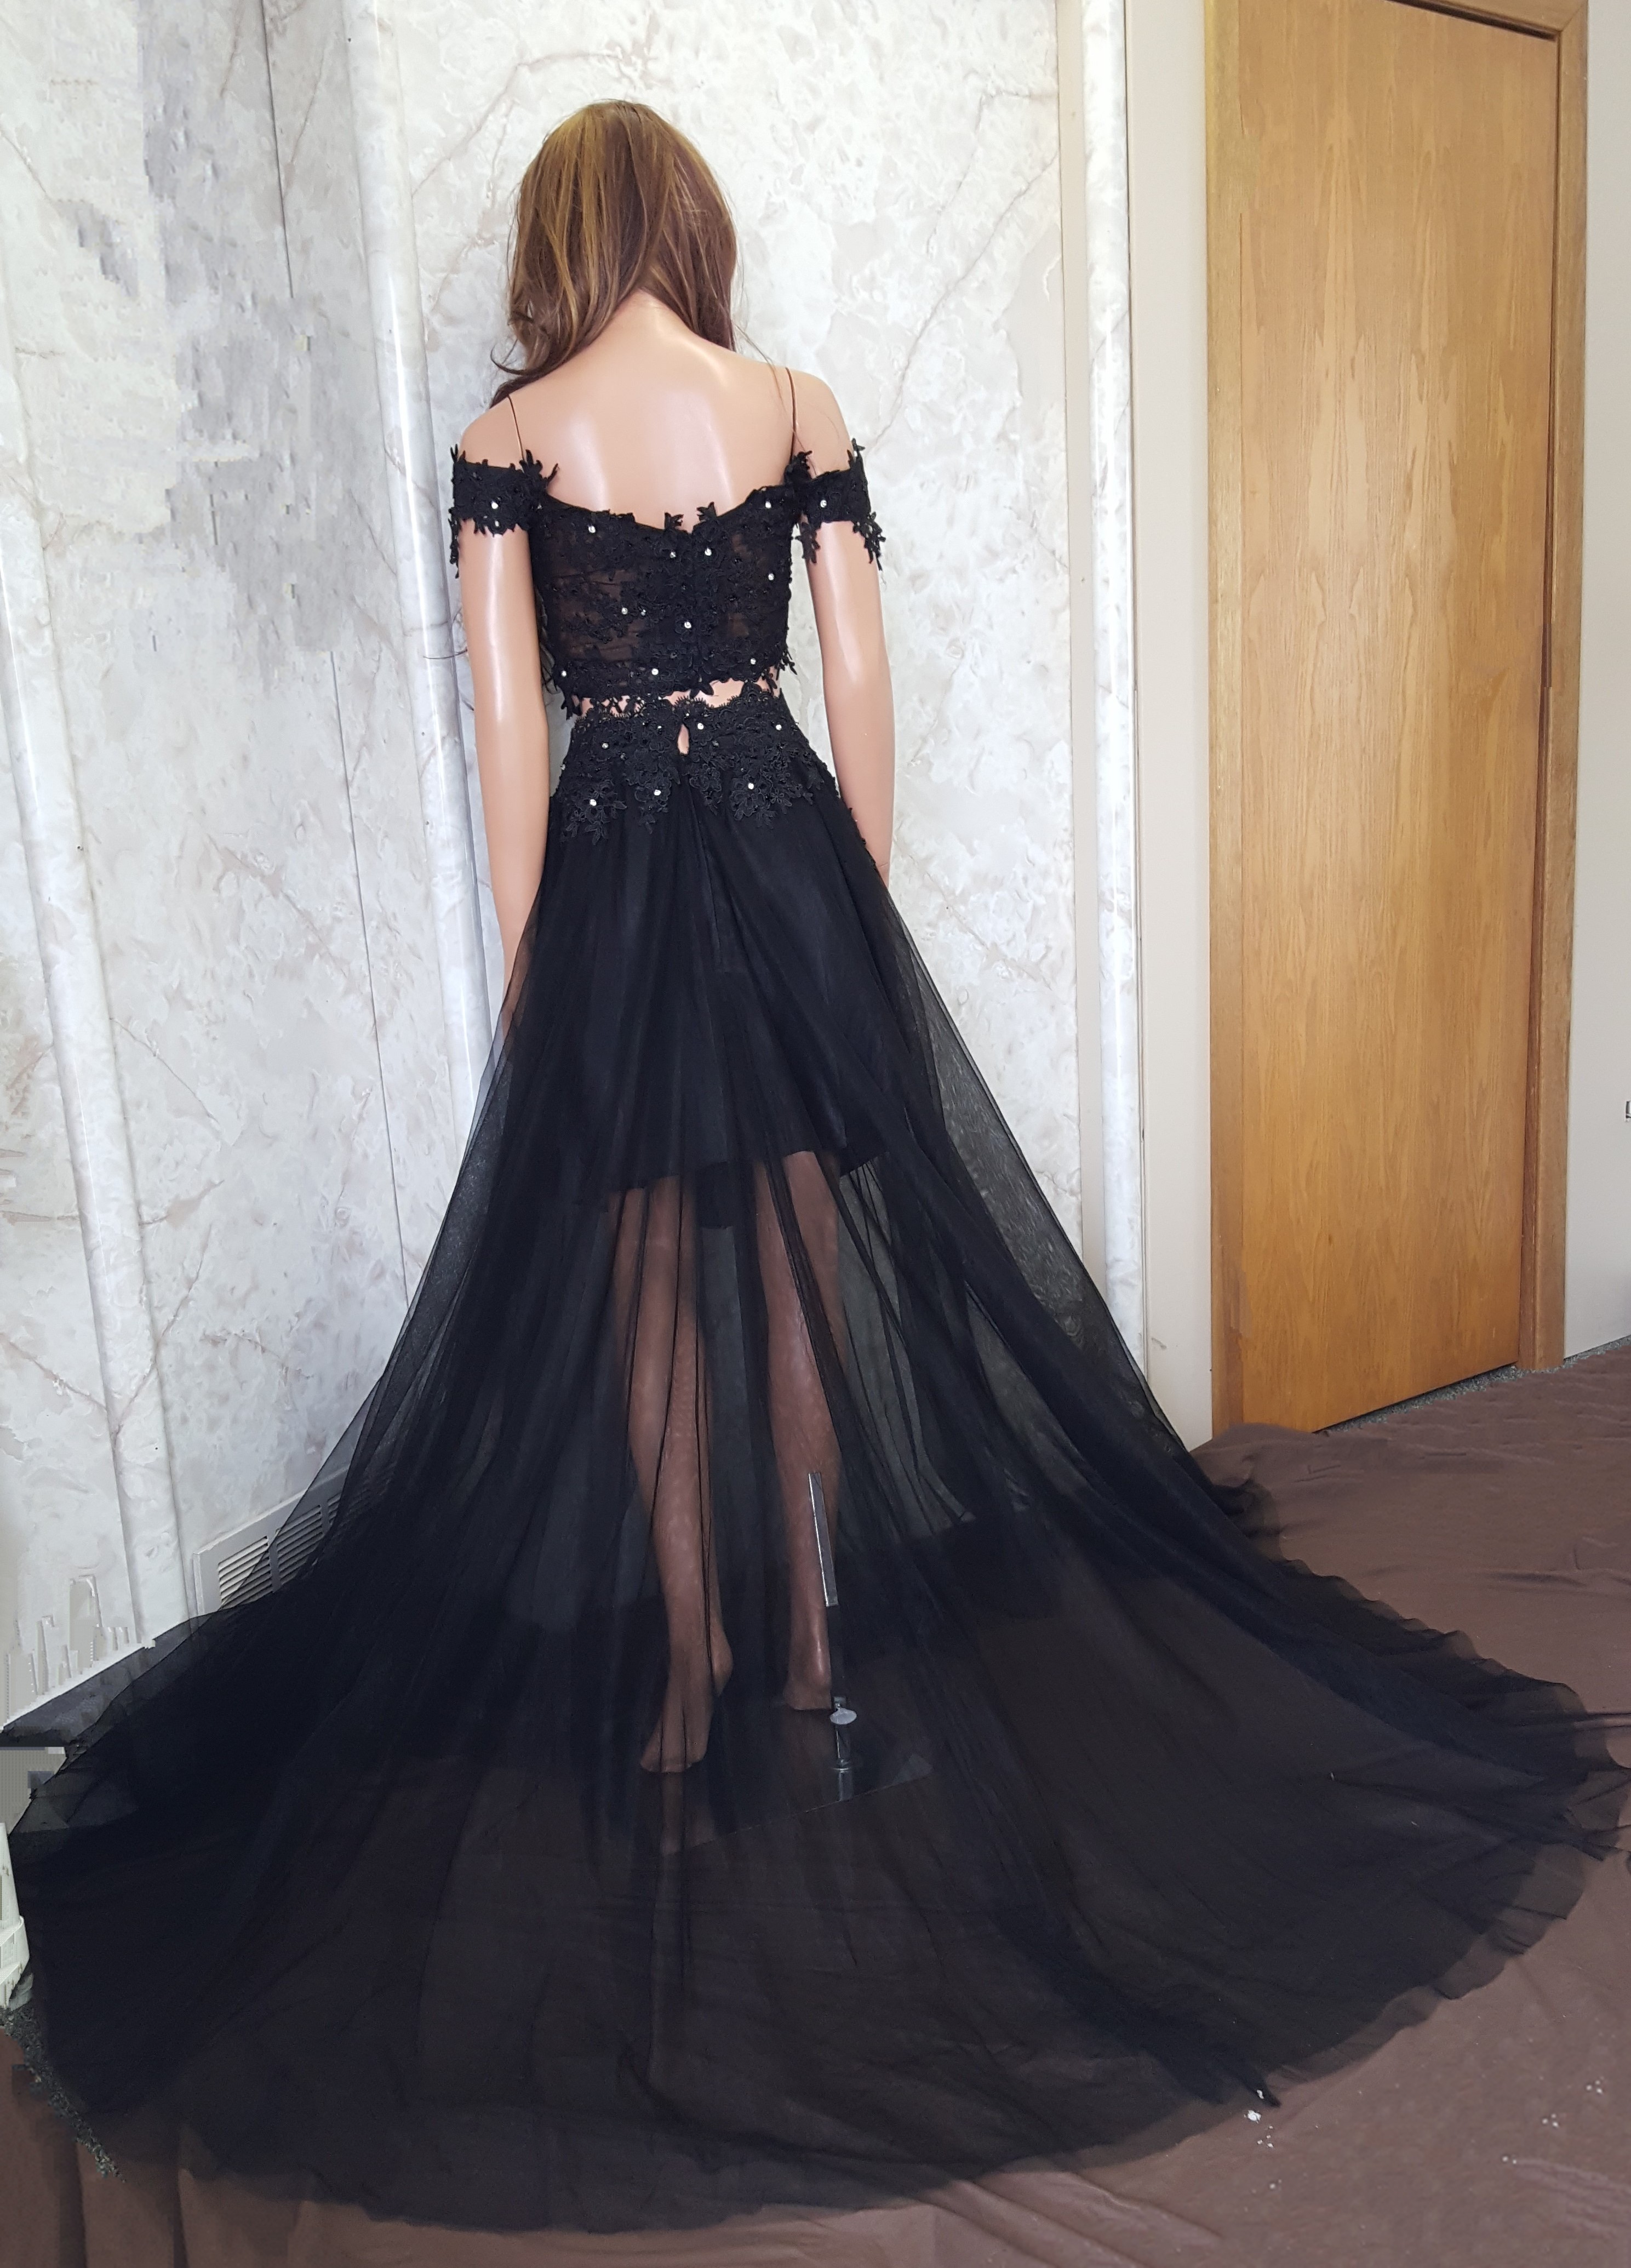 Black Two Piece Prom Dress